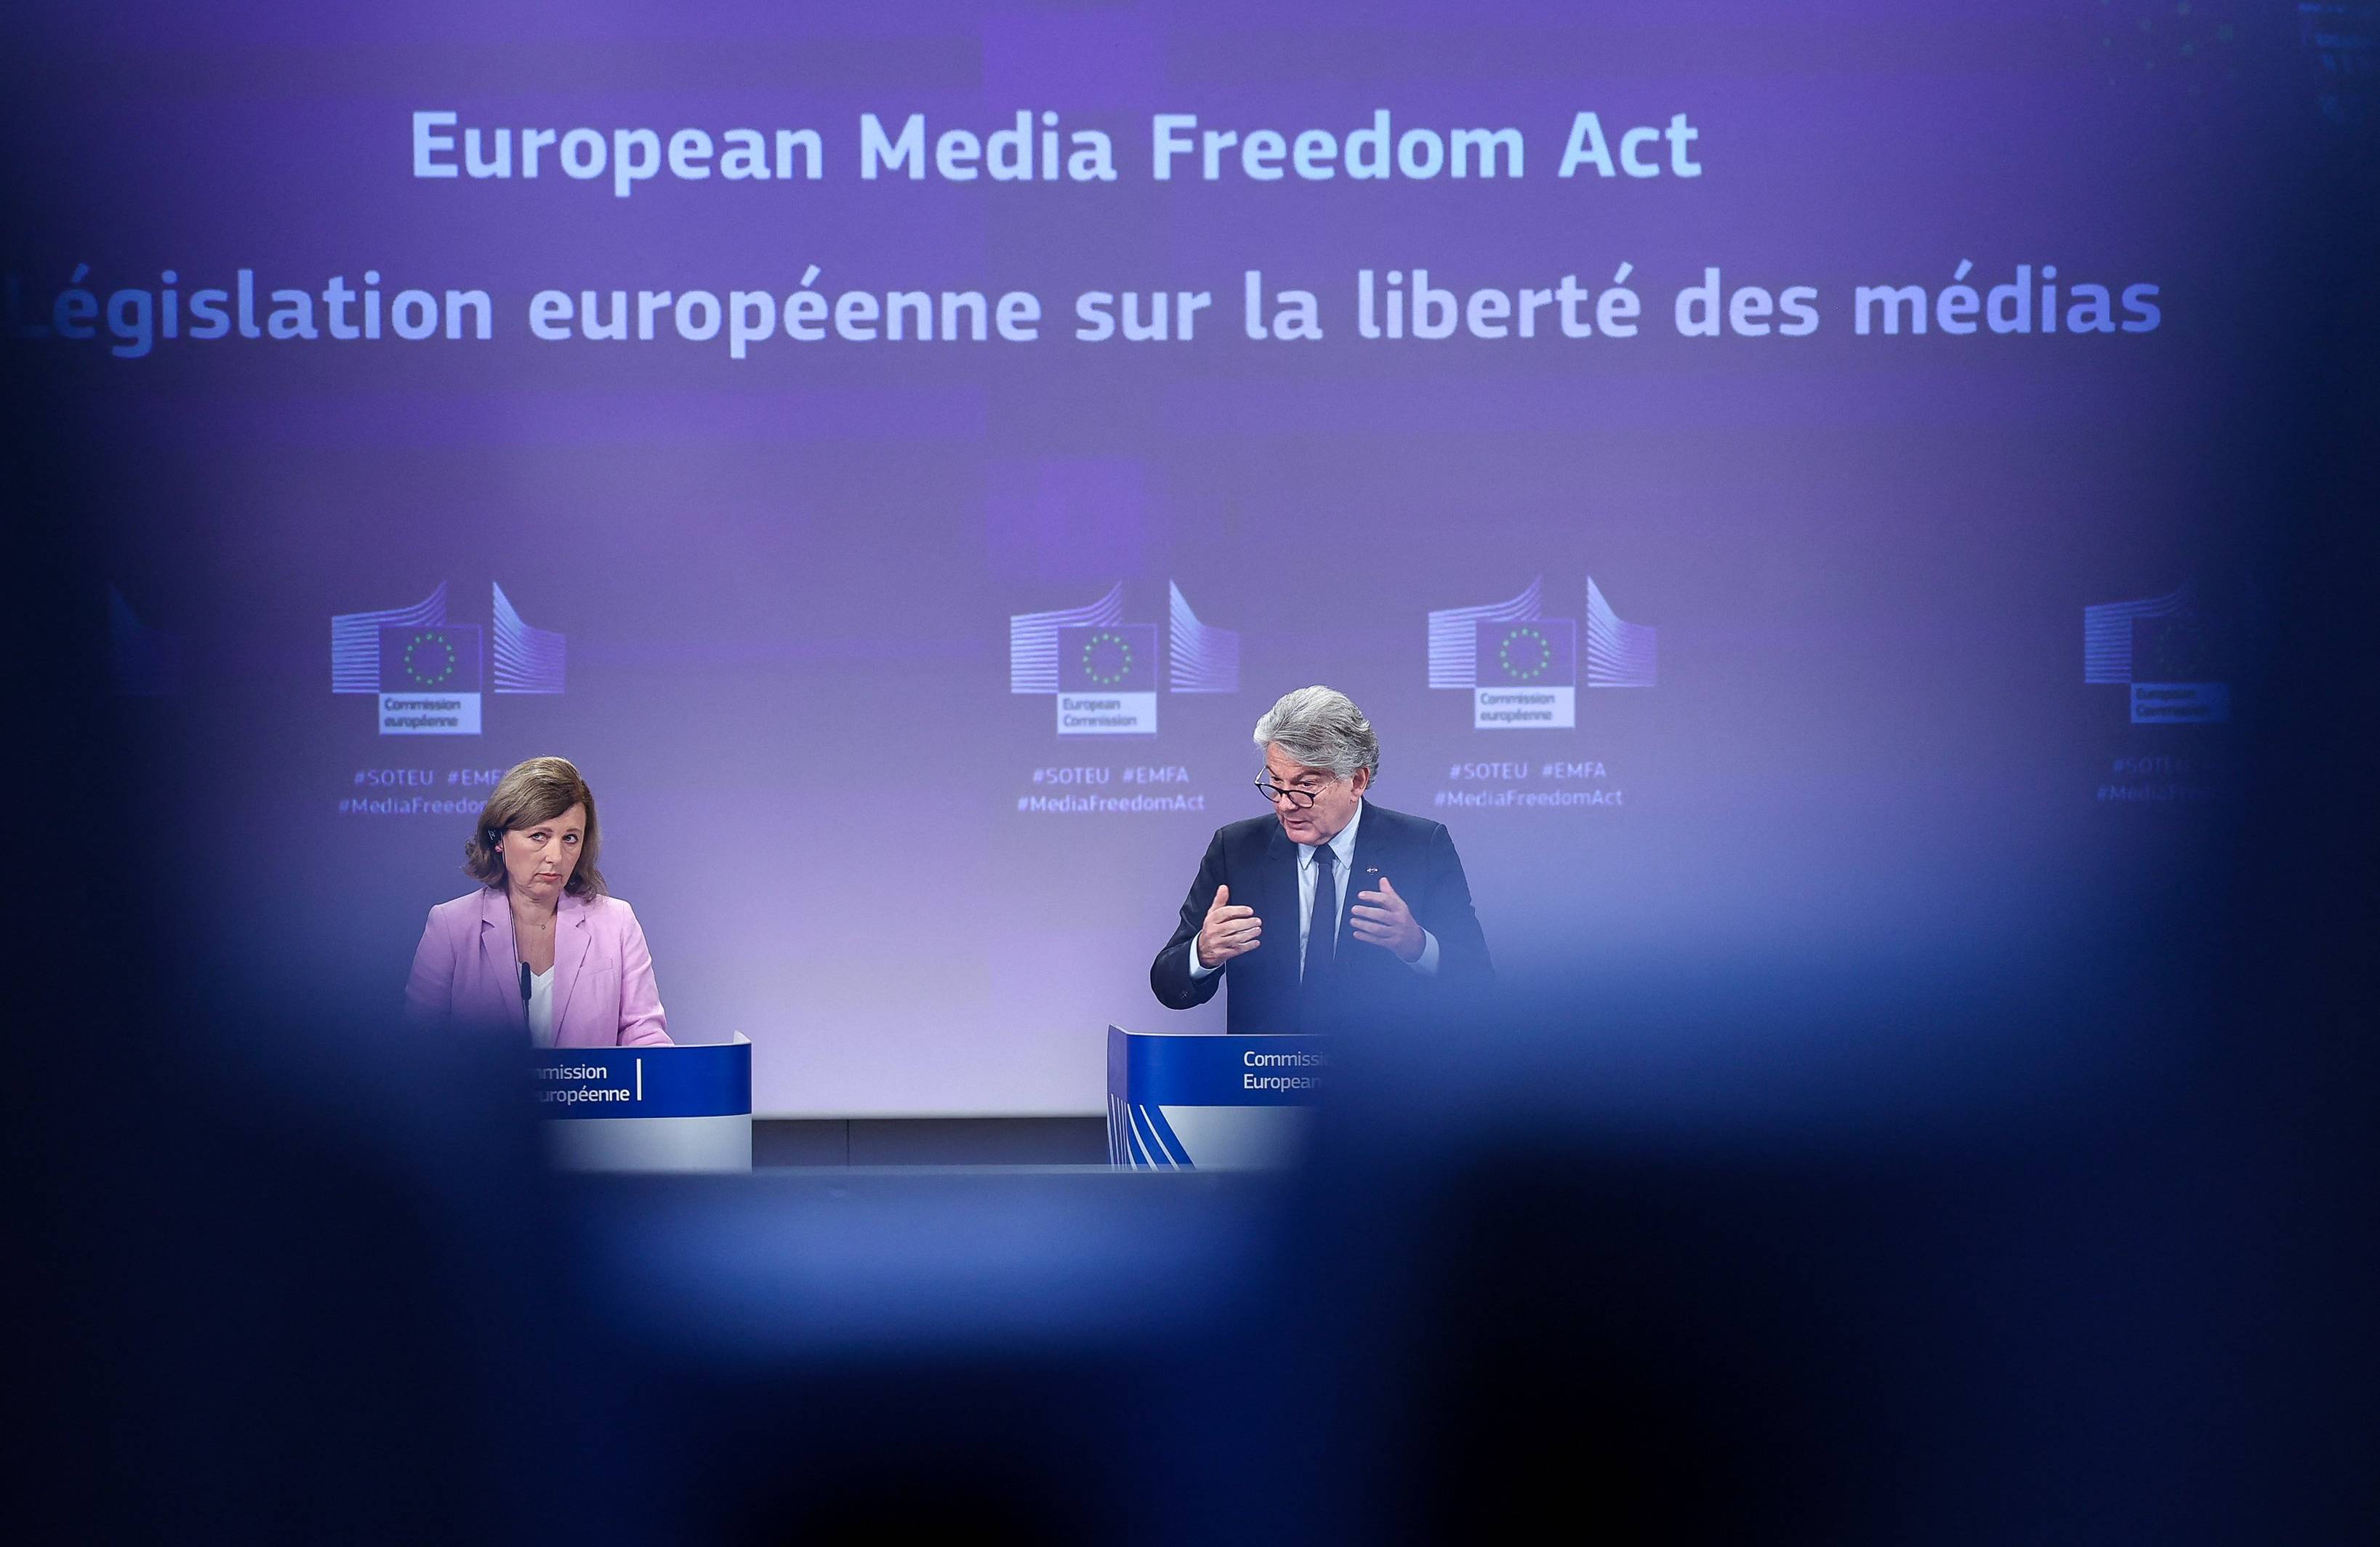 Dwoje polityków i napis na niebieskiej tablicy po angielsku i francusku (Europejski Akt o Wolności Mediów)